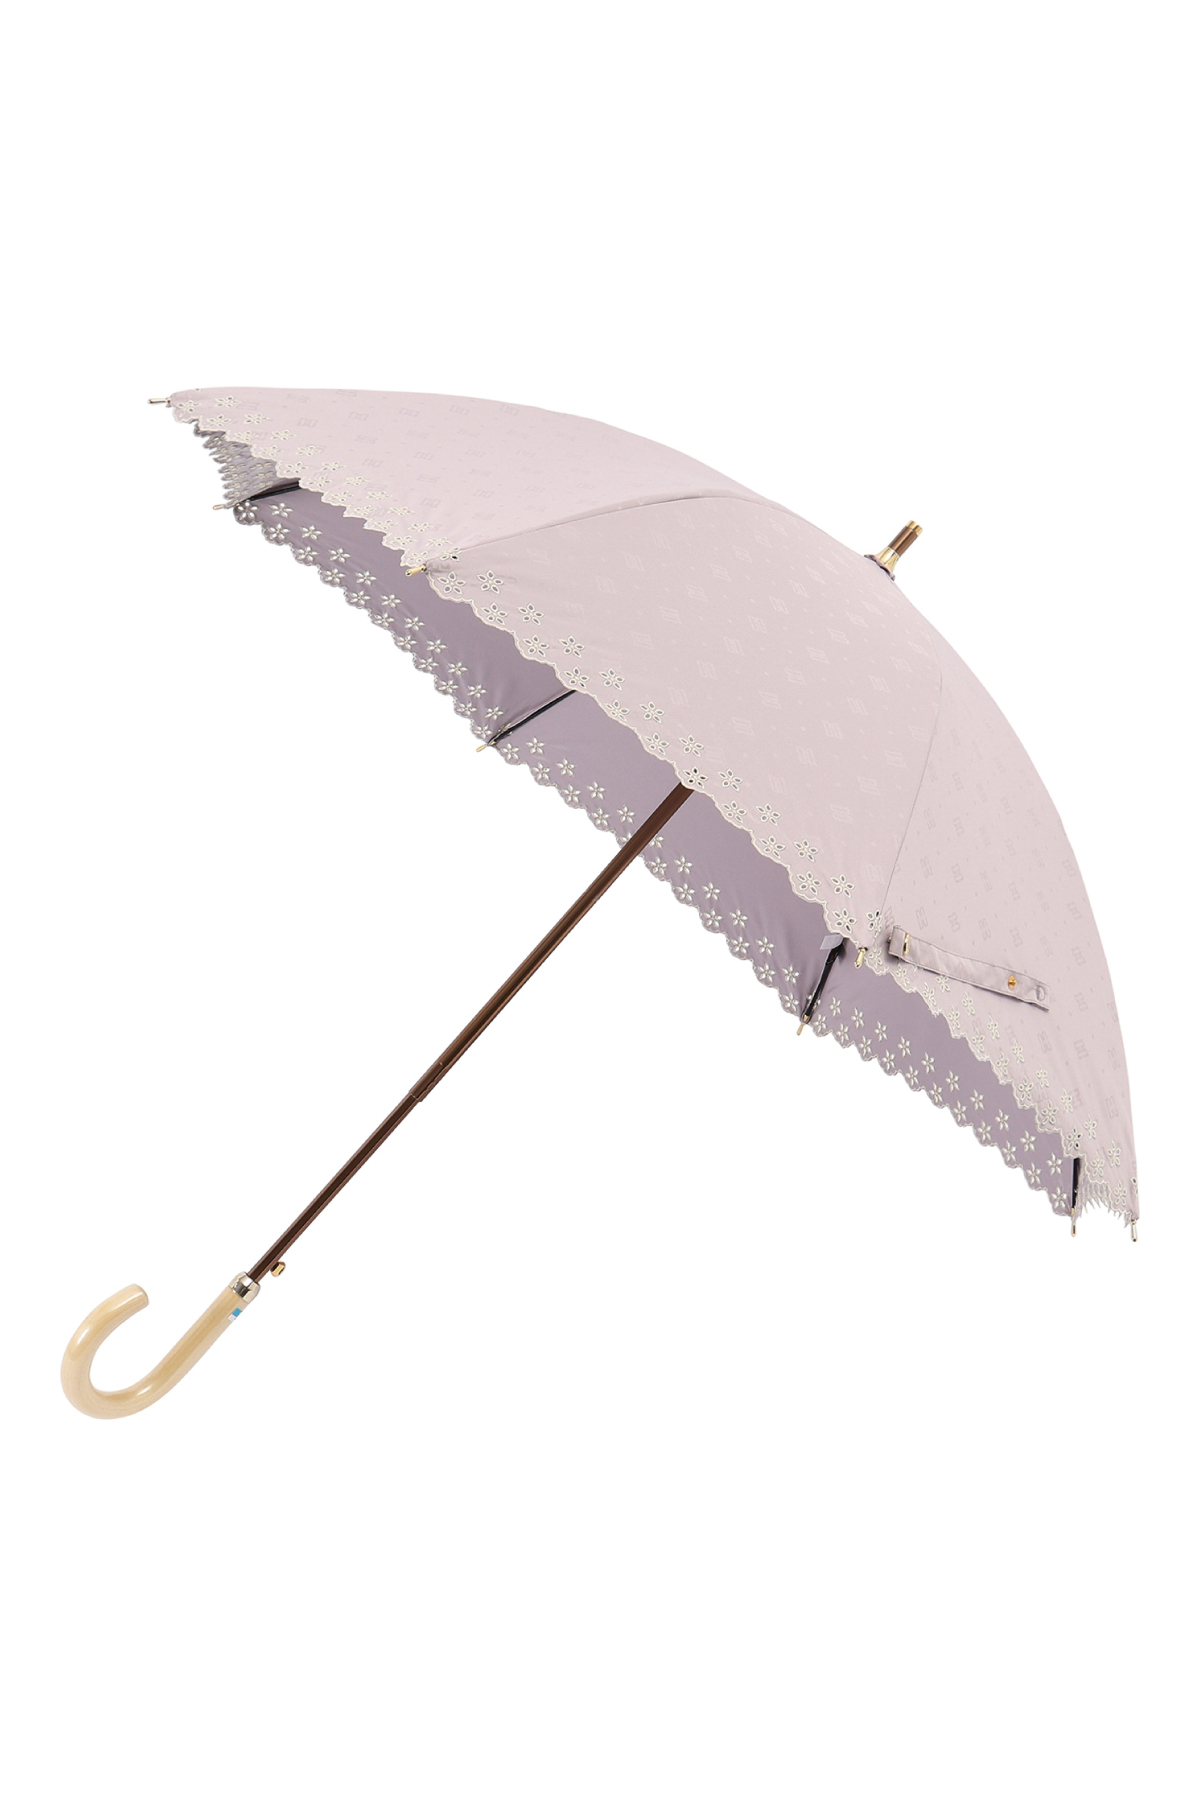 【日傘】ショート傘ドットジャカード刺繍 詳細画像 30/ピンク